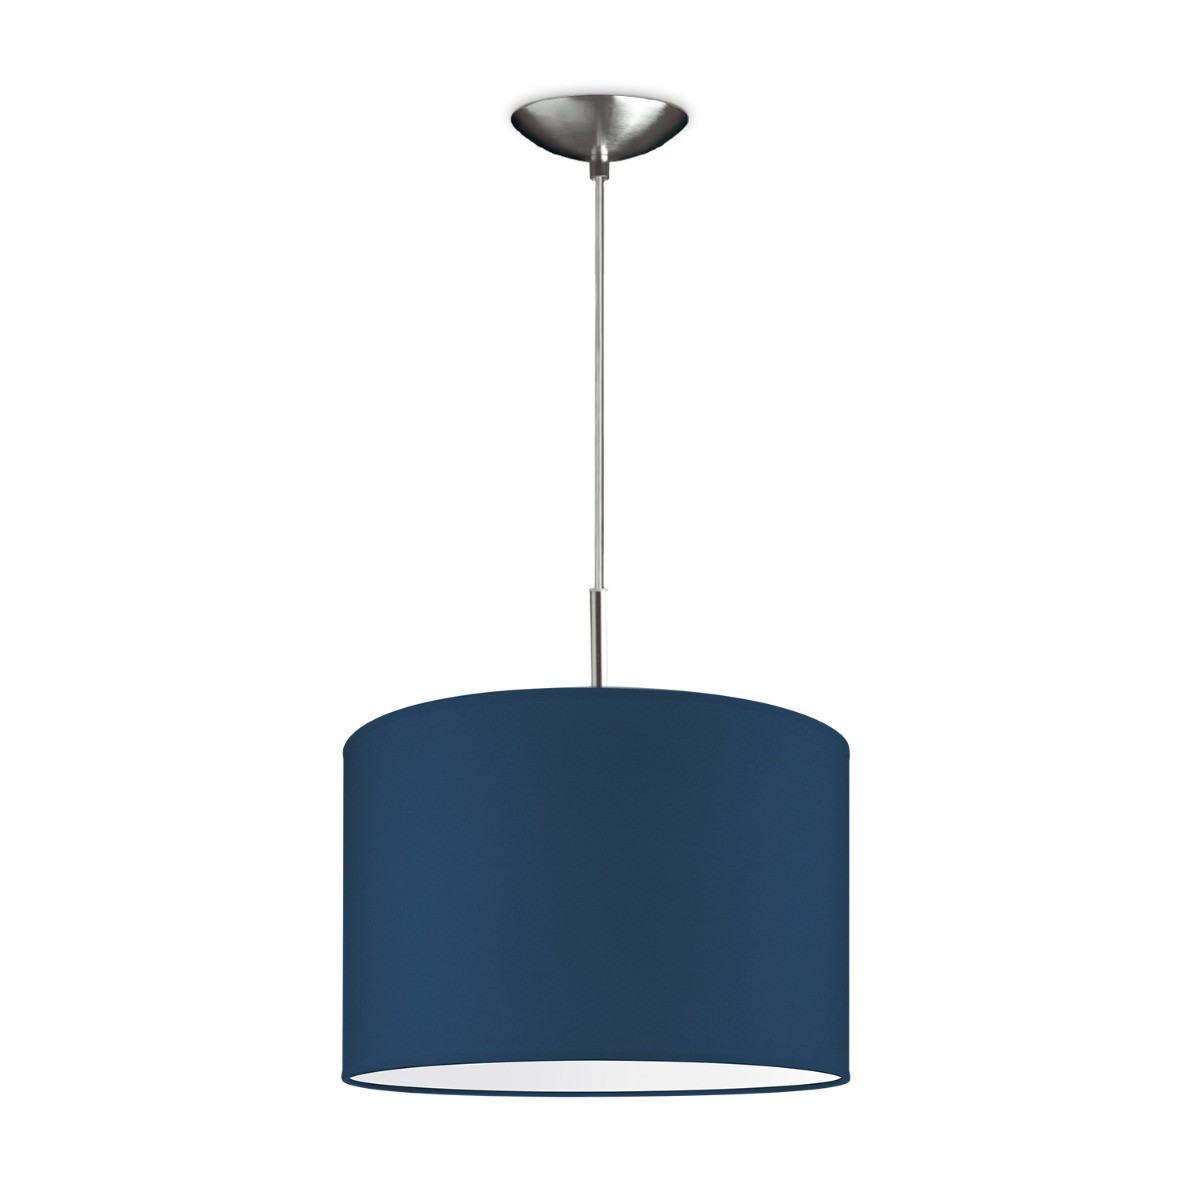 Light depot - hanglamp tube deluxe bling Ø 30 cm - blauw - Outlet